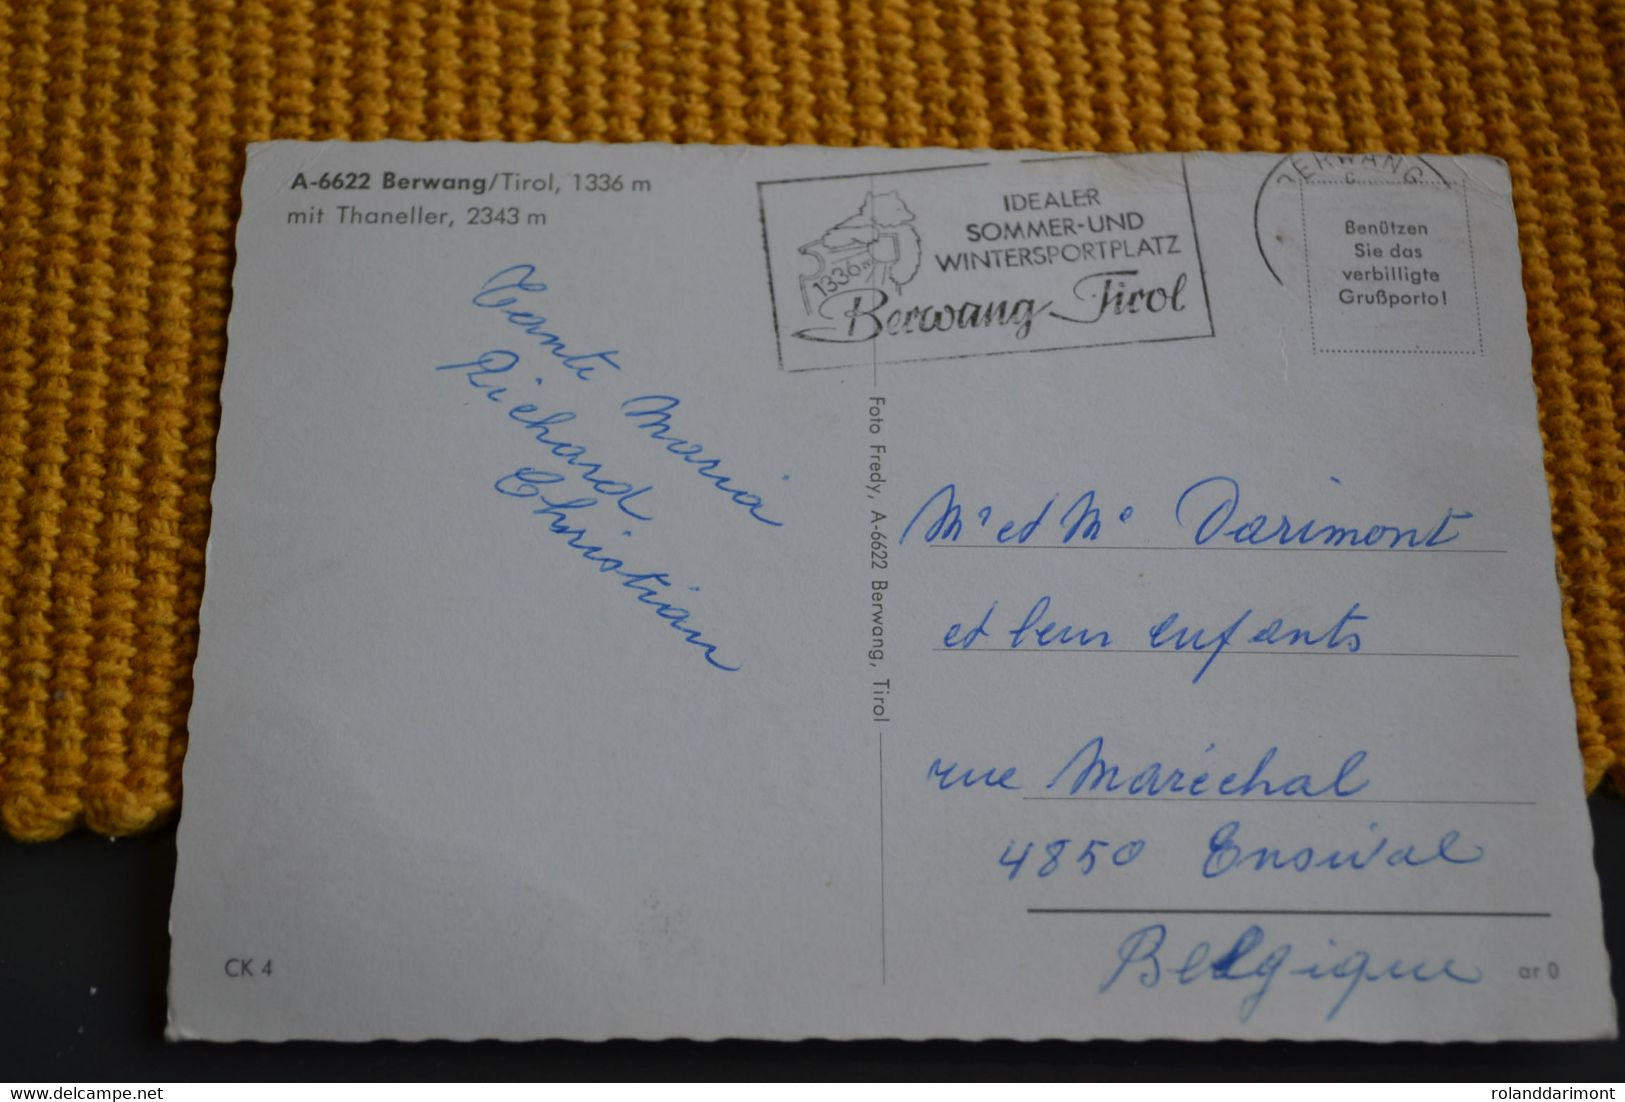 Cartes Postales D Autriche - Berwang